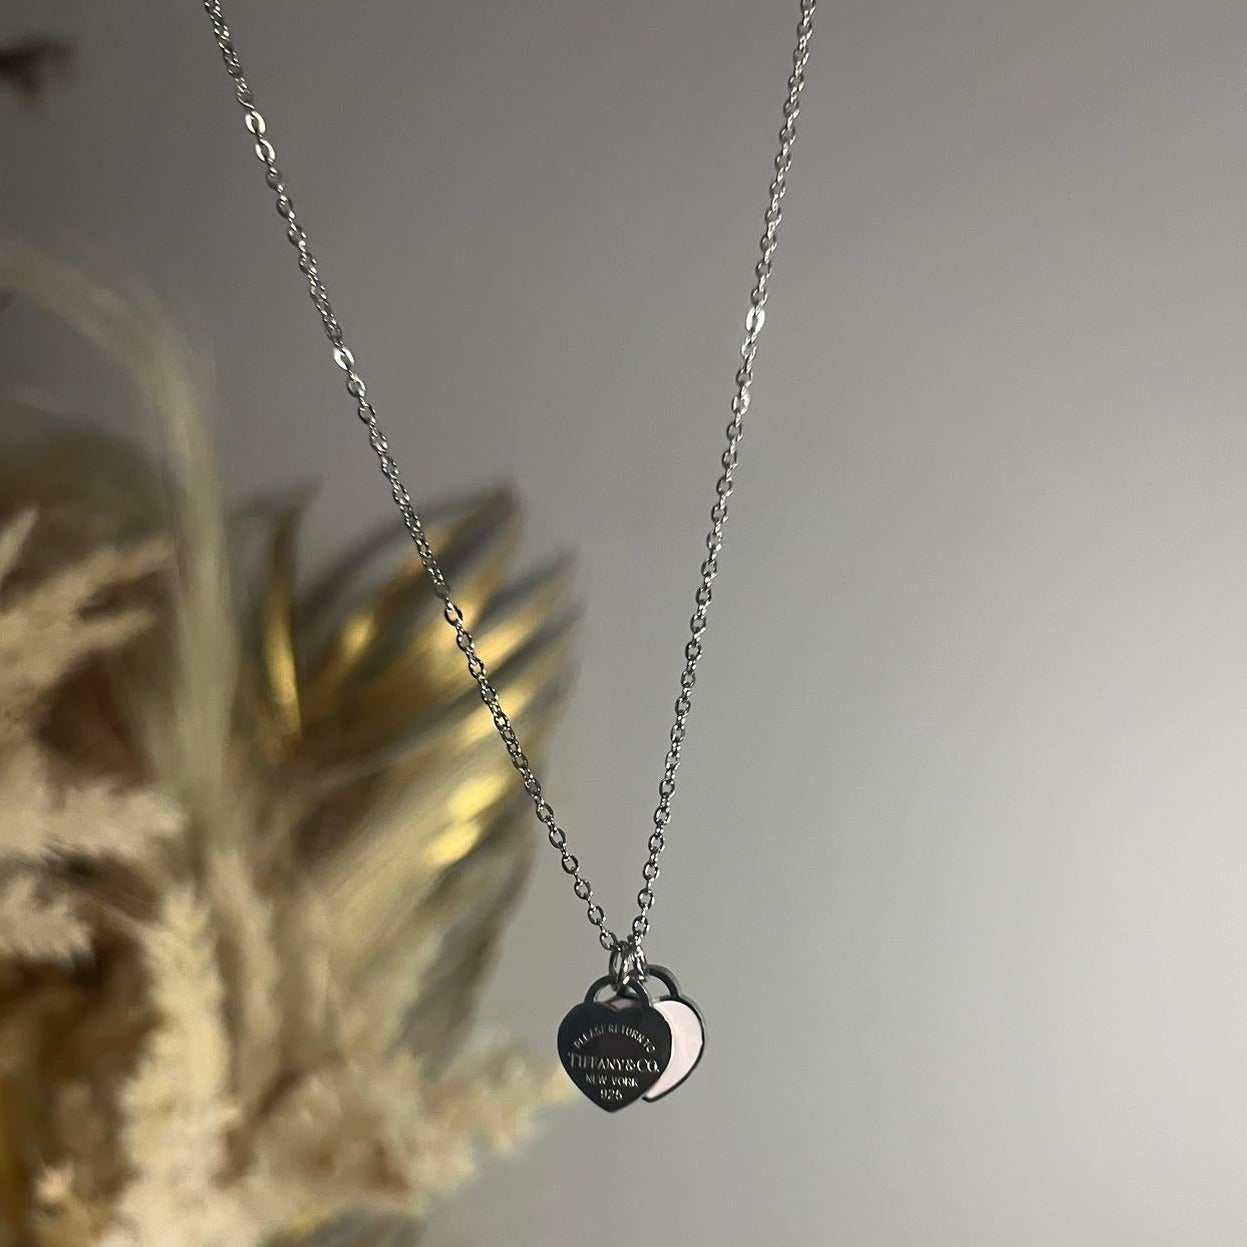 Black Tiffanyz Heart Shape Necklace Pendant | Hibaa Affordable Pendants UK